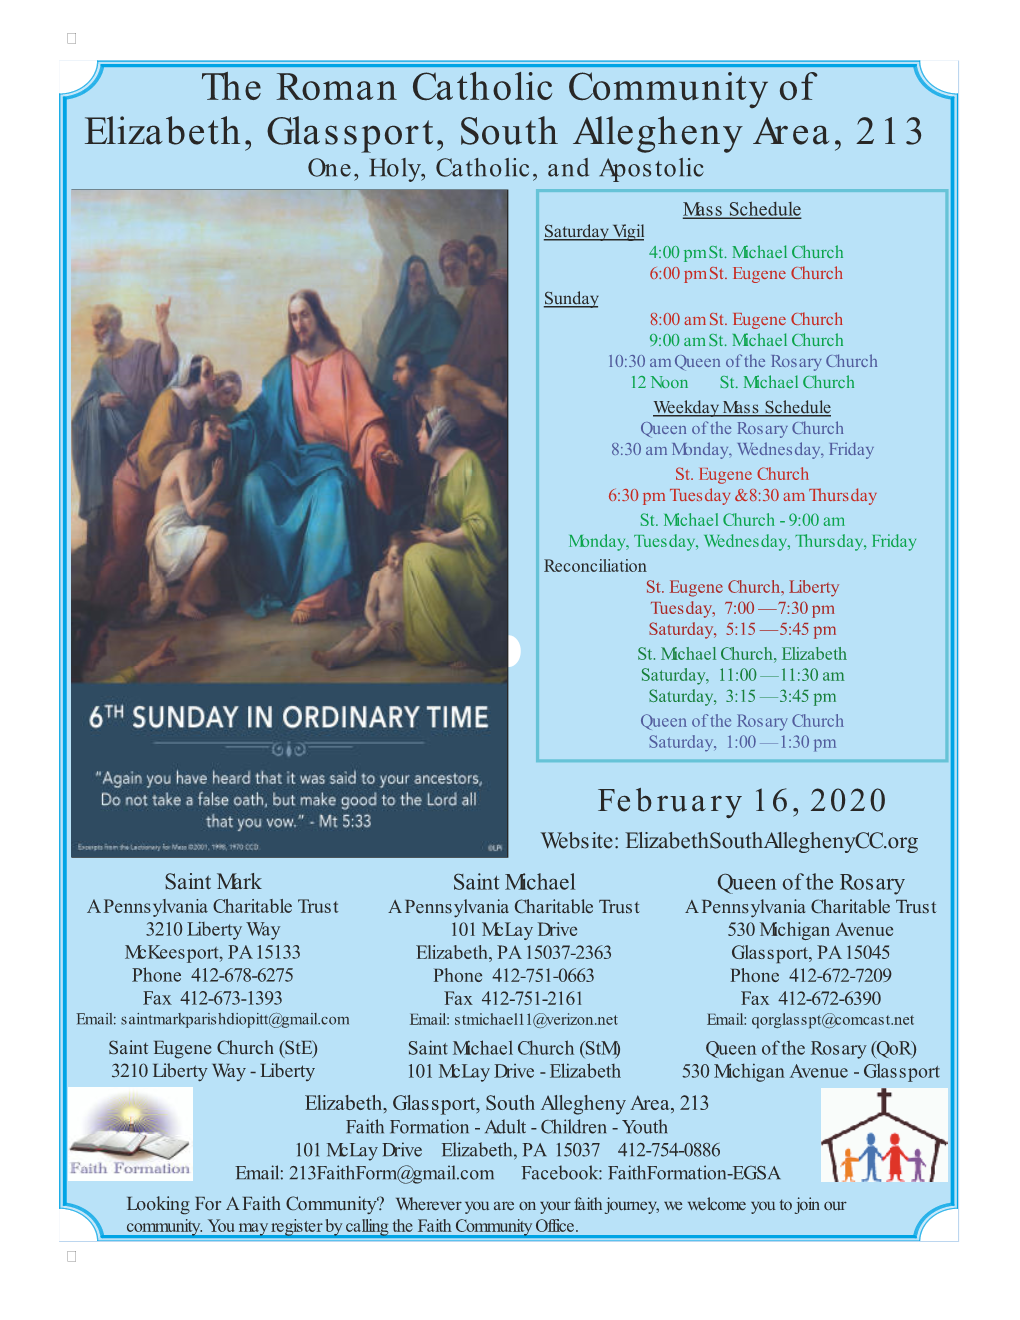 The Roman Catholic Community of Elizabeth, Glassport, South Allegheny Area, 213 One, Holy, Catholic, and Apostolic  Mass Schedule Saturday Vigil 4:00 Pm St